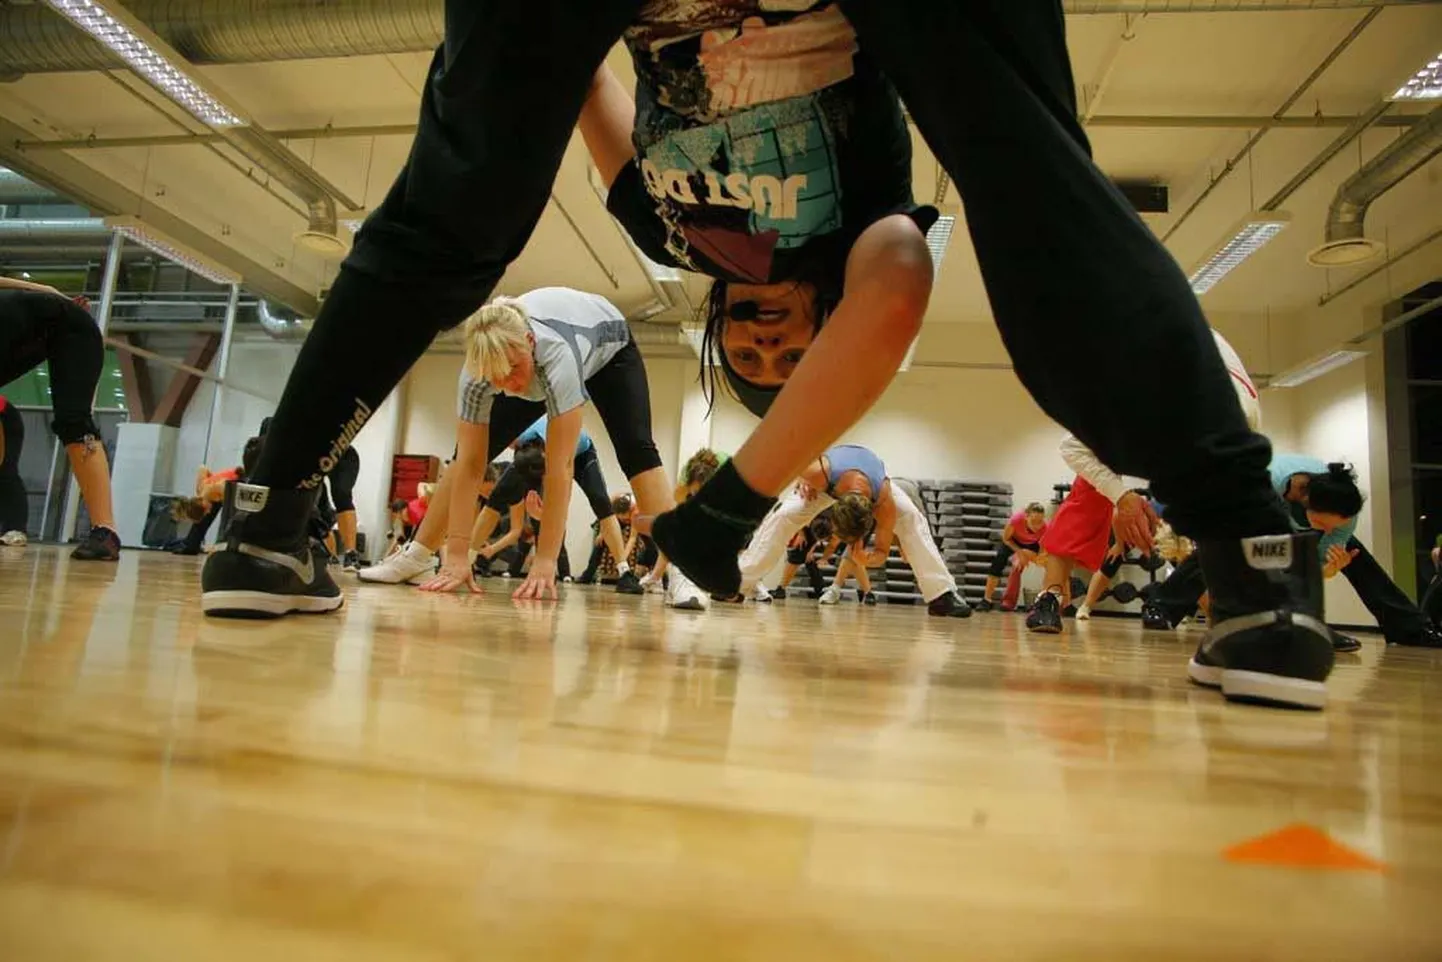 Tiina Sarapuu juhtimisel on BodyJam lõbus treening, mis peaks järjepideva harjutamisega parandama iga trennis osaleja tantsuoskustki.